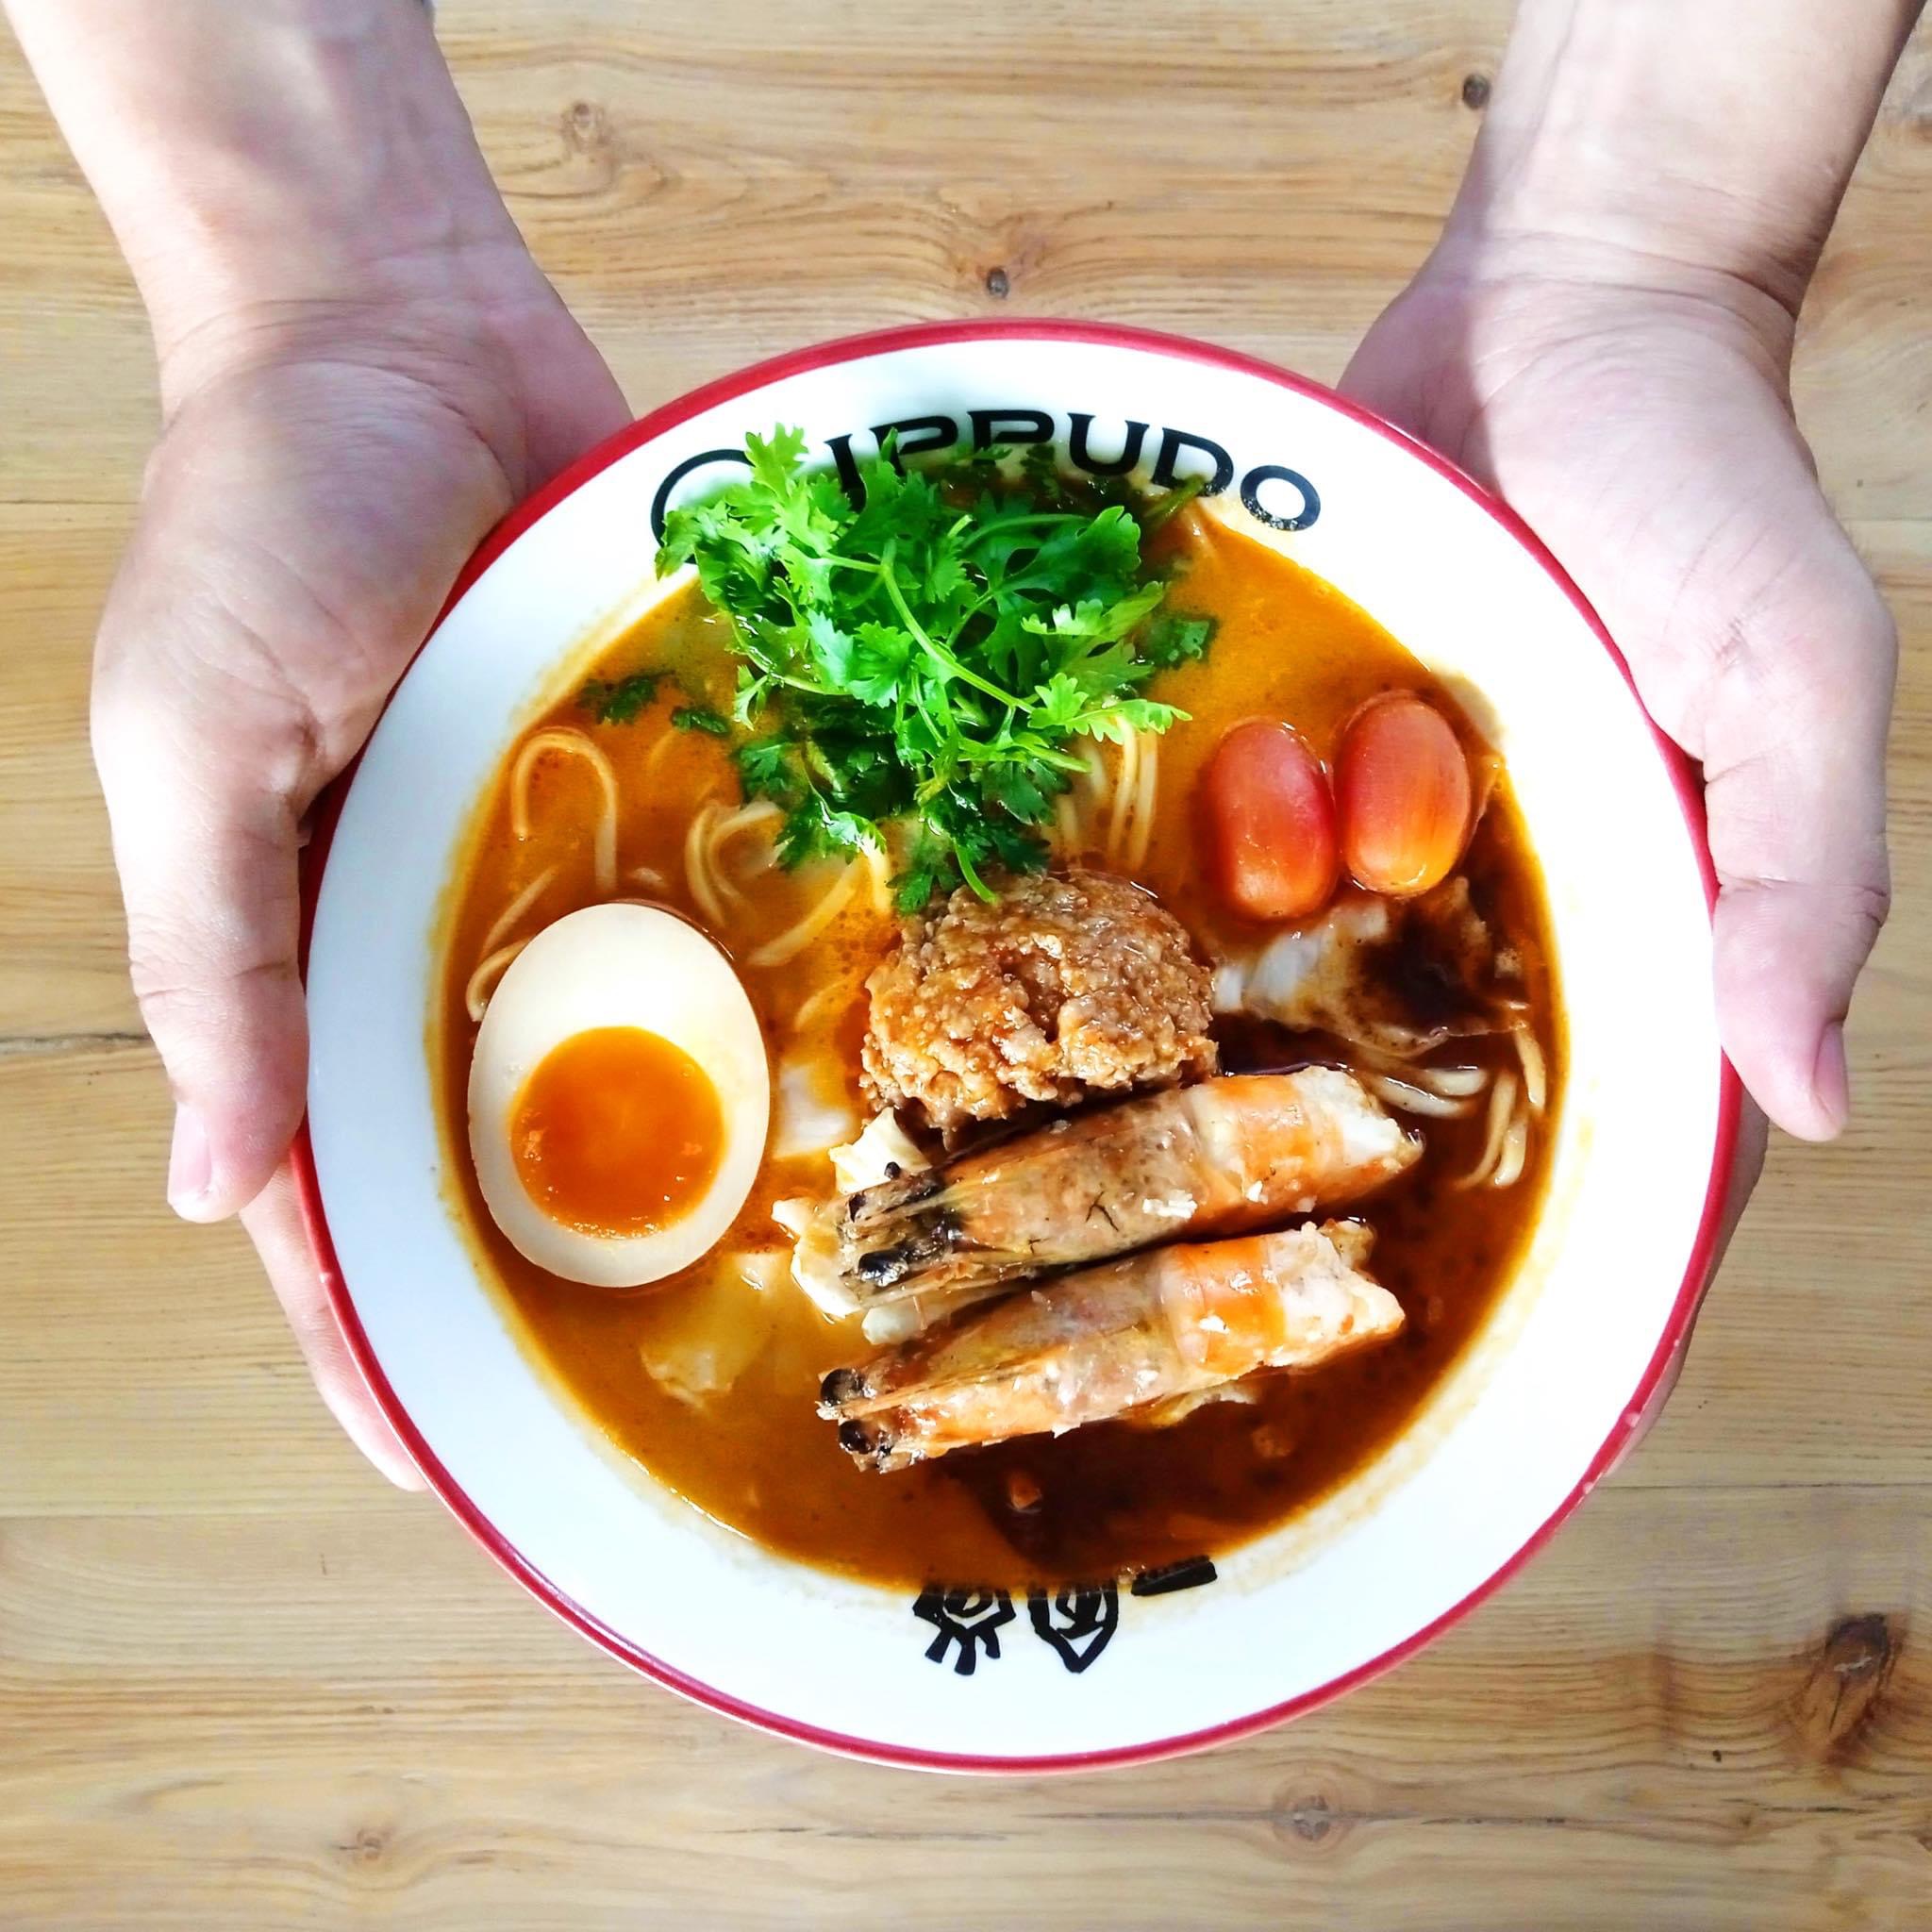 Top 23 quán ăn ngon ở Sài Gòn được yêu thích nhất TPHCM - IPPUDO Ramen